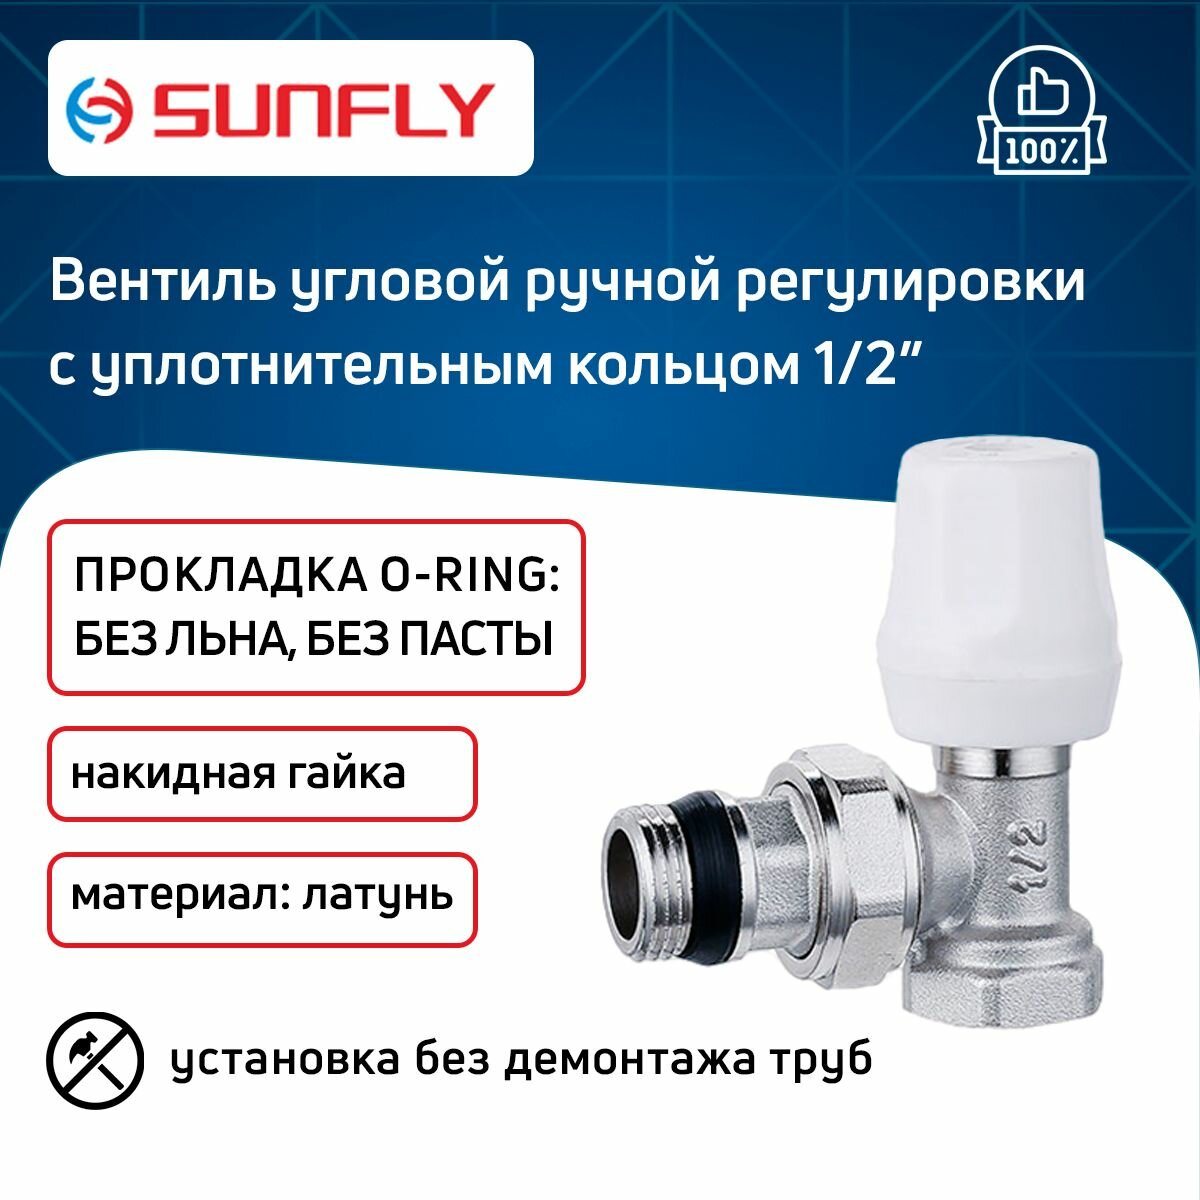 Вентиль SunFly для радиатора угловой ручной регулировки с уплотнительным кольцом с накидной гайкой 1/2" вн./нар.